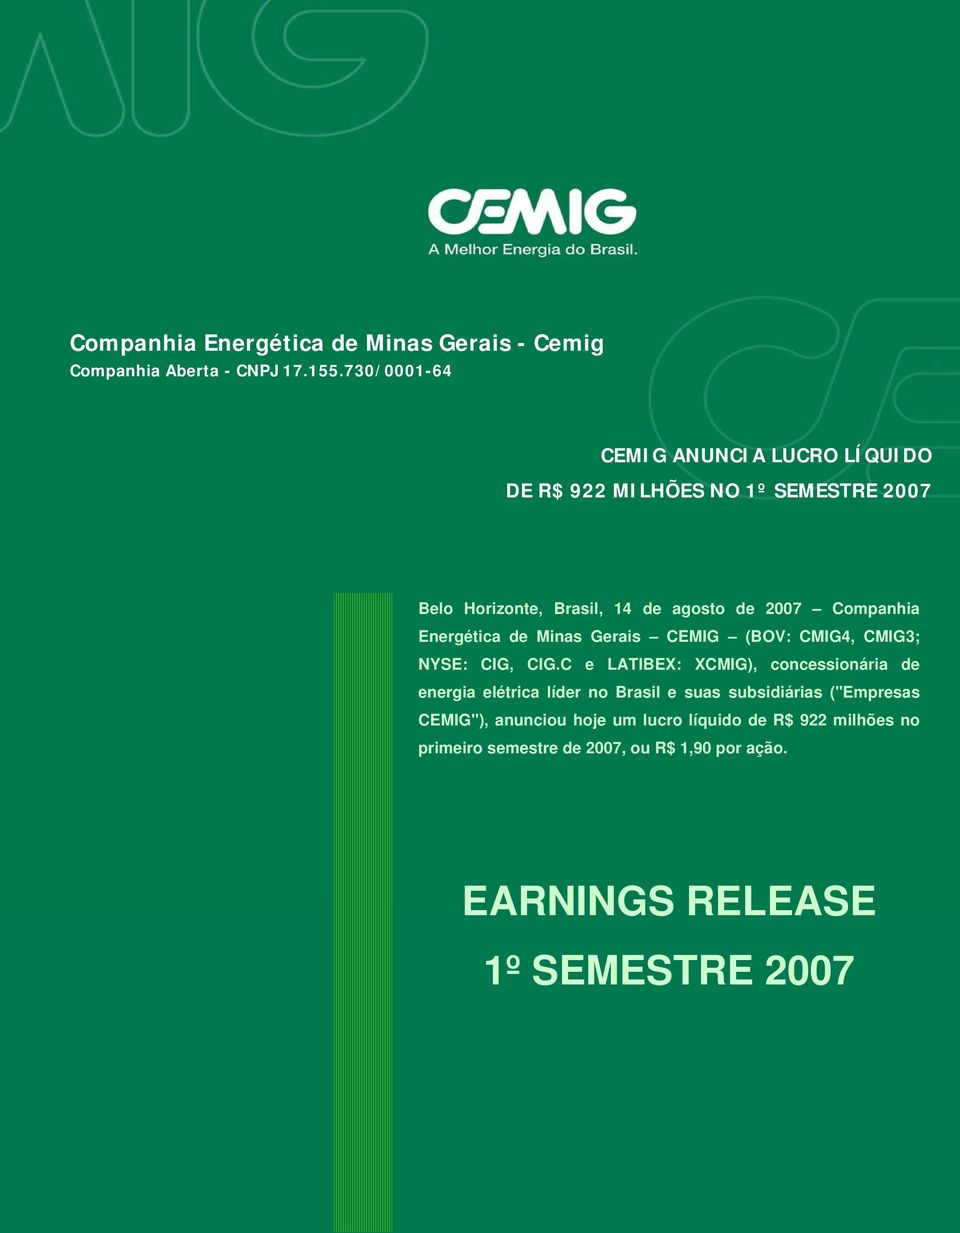 Companhia Energética de Minas Gerais CEMIG (BOV: CMIG4, CMIG3; NYSE: CIG, CIG.